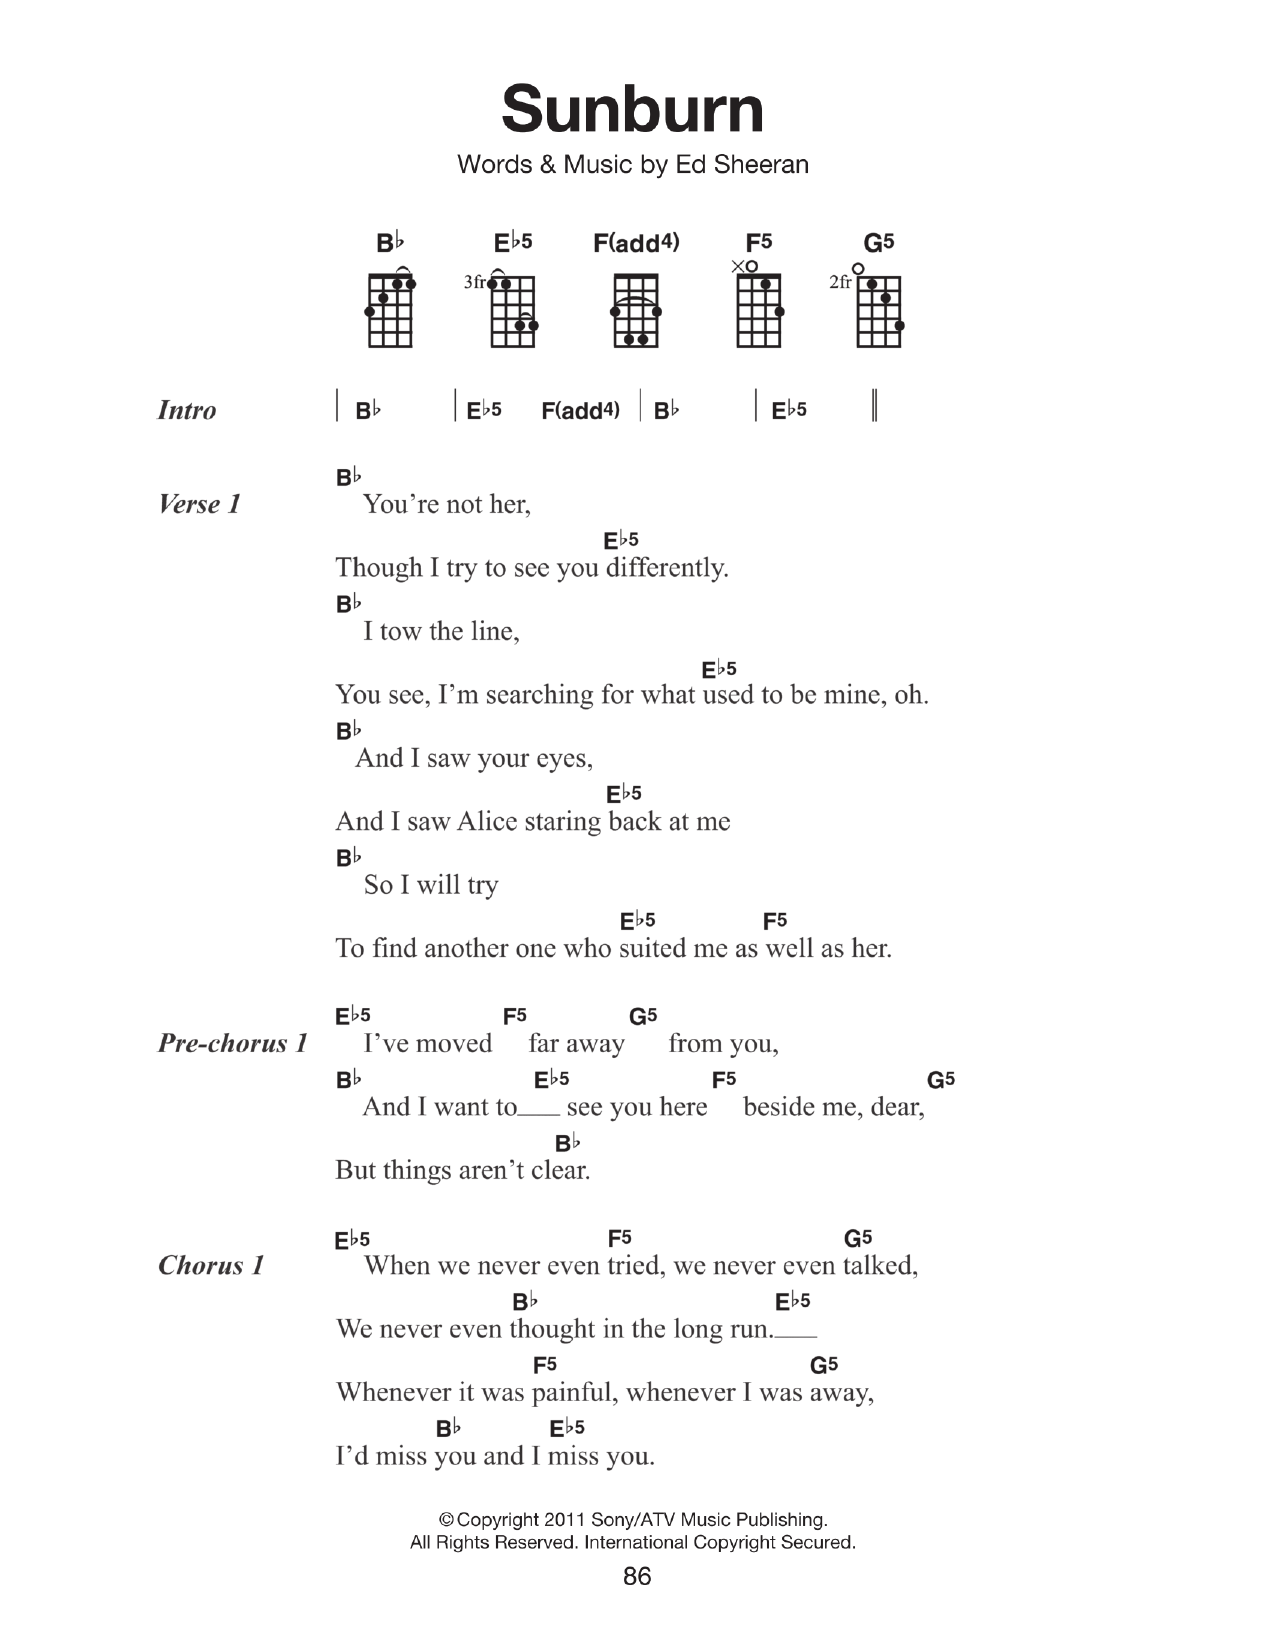 Ed Sheeran Sunburn Sheet Music Notes & Chords for Ukulele - Download or Print PDF